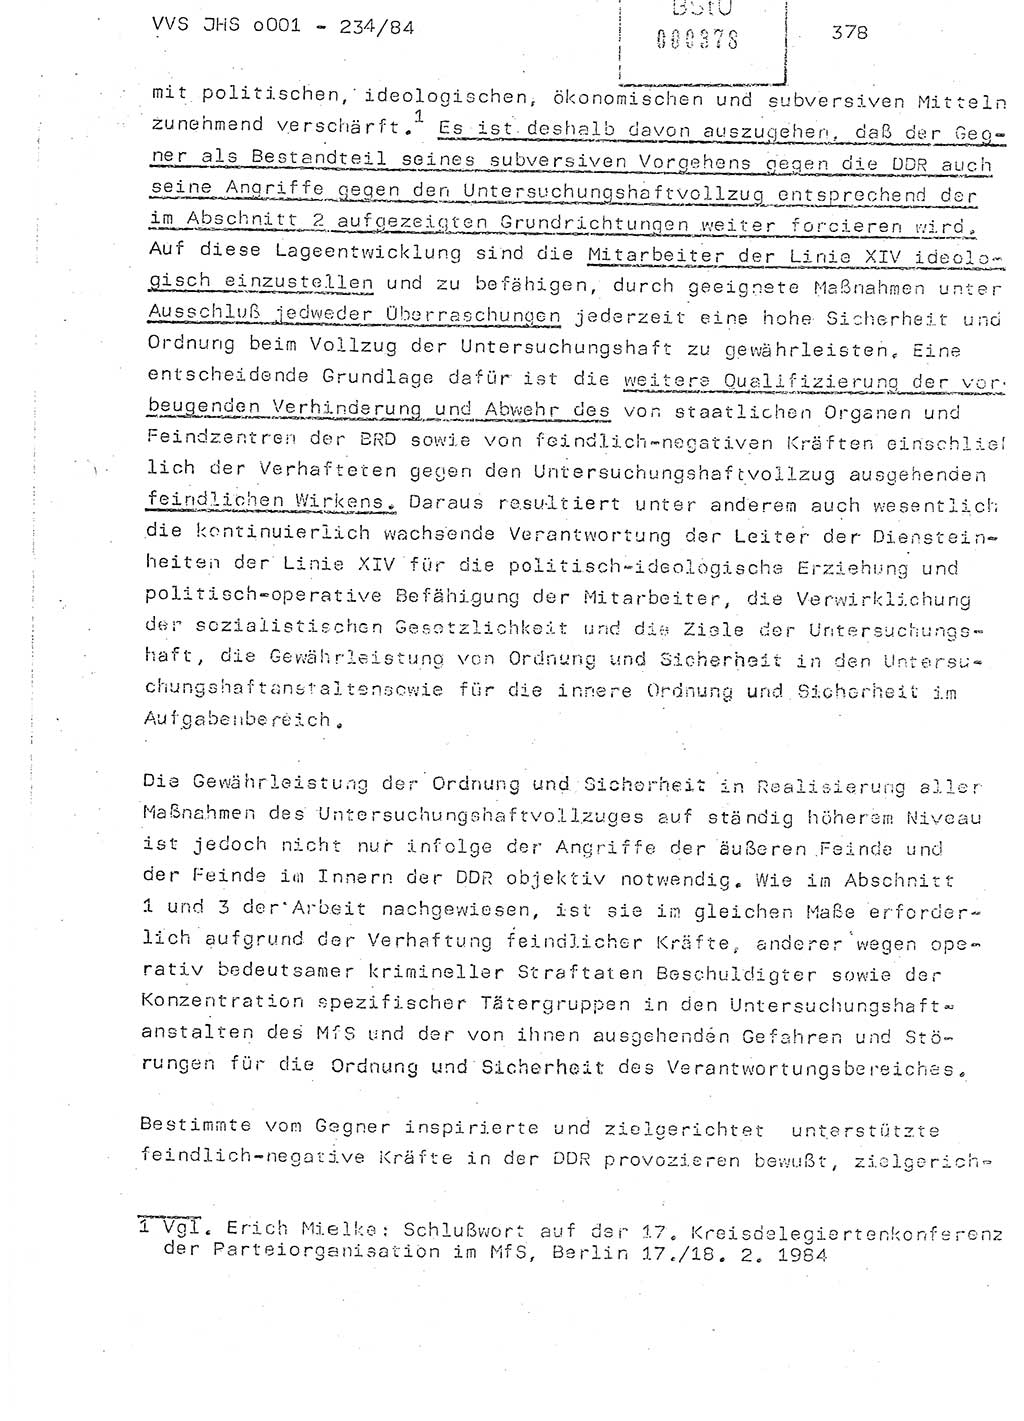 Dissertation Oberst Siegfried Rataizick (Abt. ⅩⅣ), Oberstleutnant Volkmar Heinz (Abt. ⅩⅣ), Oberstleutnant Werner Stein (HA Ⅸ), Hauptmann Heinz Conrad (JHS), Ministerium für Staatssicherheit (MfS) [Deutsche Demokratische Republik (DDR)], Juristische Hochschule (JHS), Vertrauliche Verschlußsache (VVS) o001-234/84, Potsdam 1984, Seite 378 (Diss. MfS DDR JHS VVS o001-234/84 1984, S. 378)